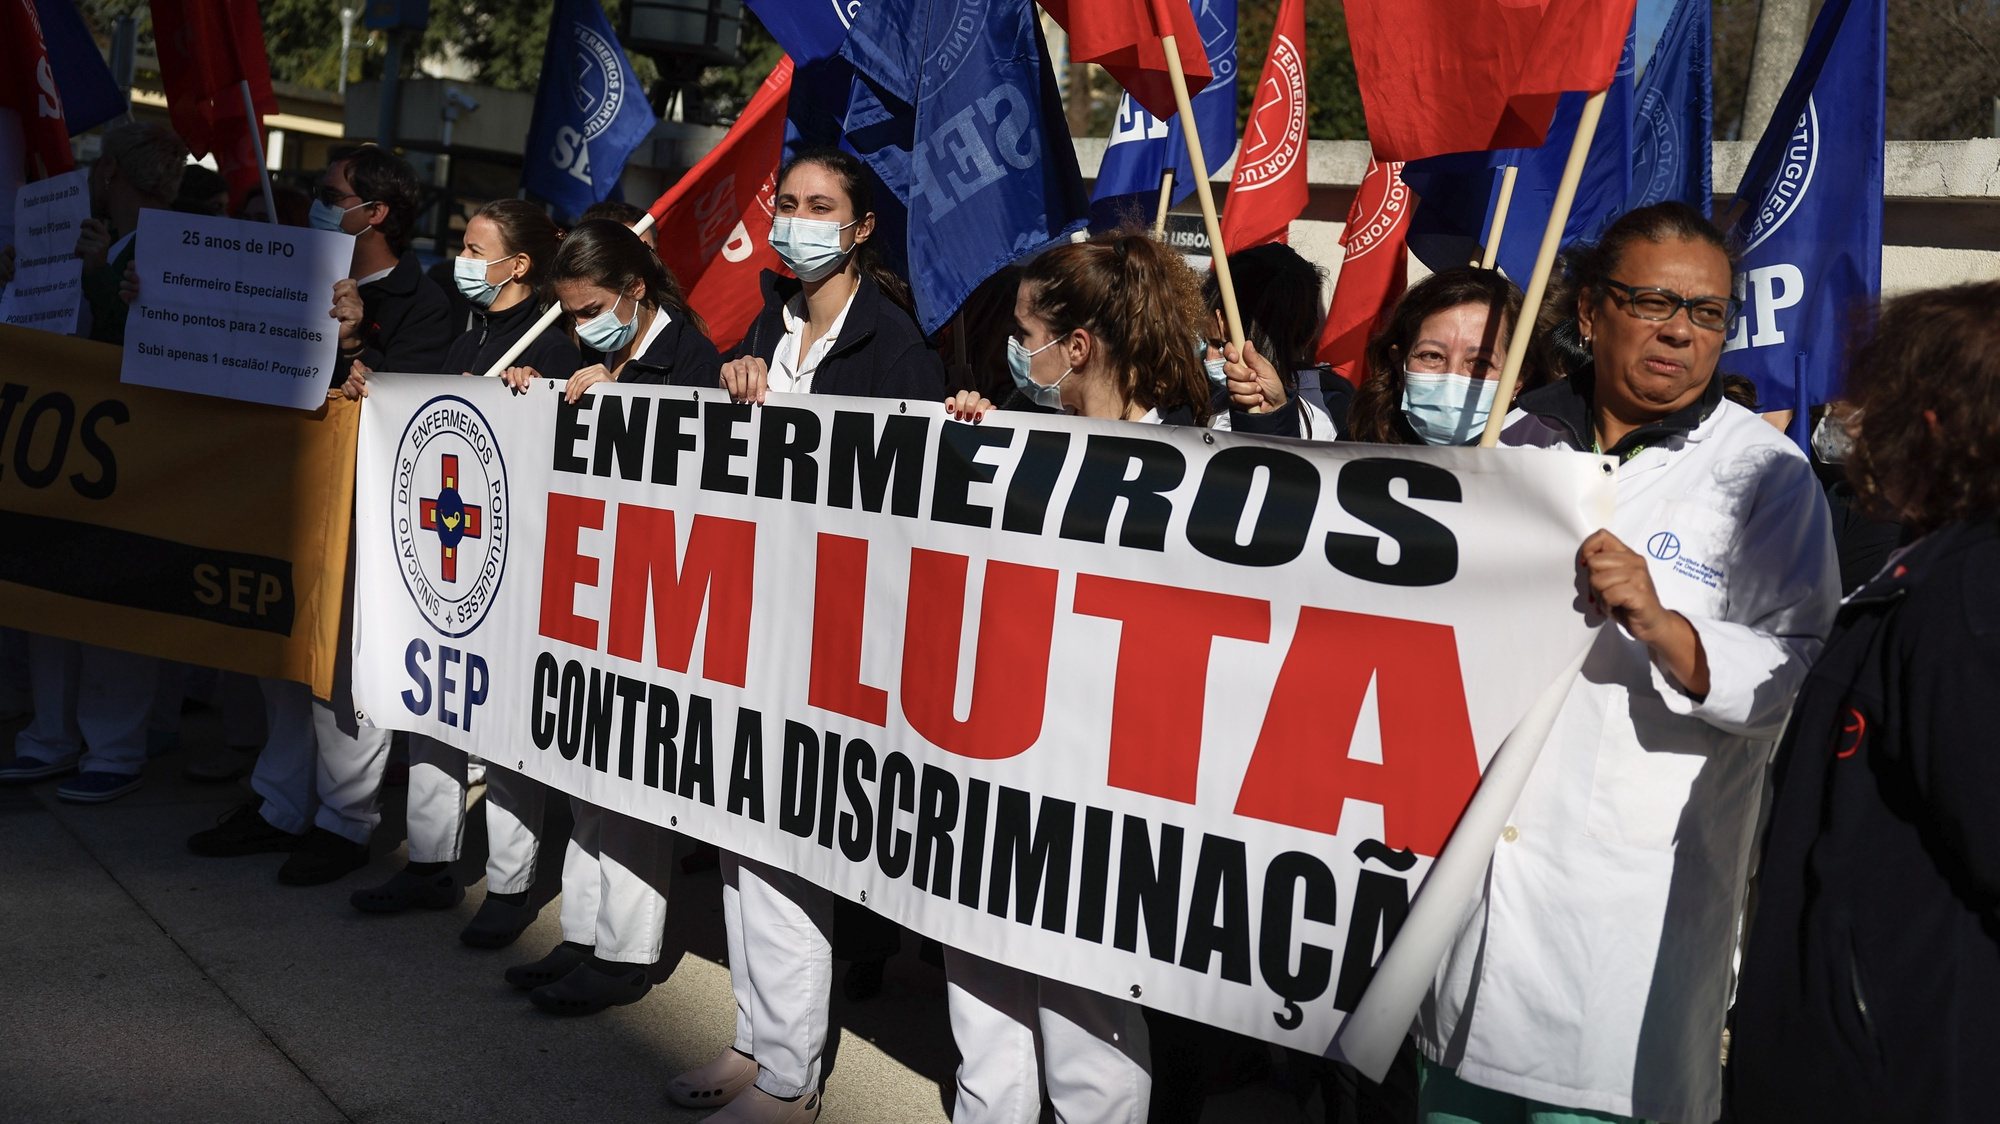 Enfermeiros do Instituto Português de Oncologia (IPO) de Lisboa em greve gritam palavras de ordem durante um protesto convocado pelo Sindicato dos Enfermeiros Portugueses, contra a não contabilização dos anos de serviço a que os profissionais dizem ter direito, em frente ao IPO, em Lisboa, 06 de fevereiro de 2023. JOSÉ SENA GOULÃO/LUSA